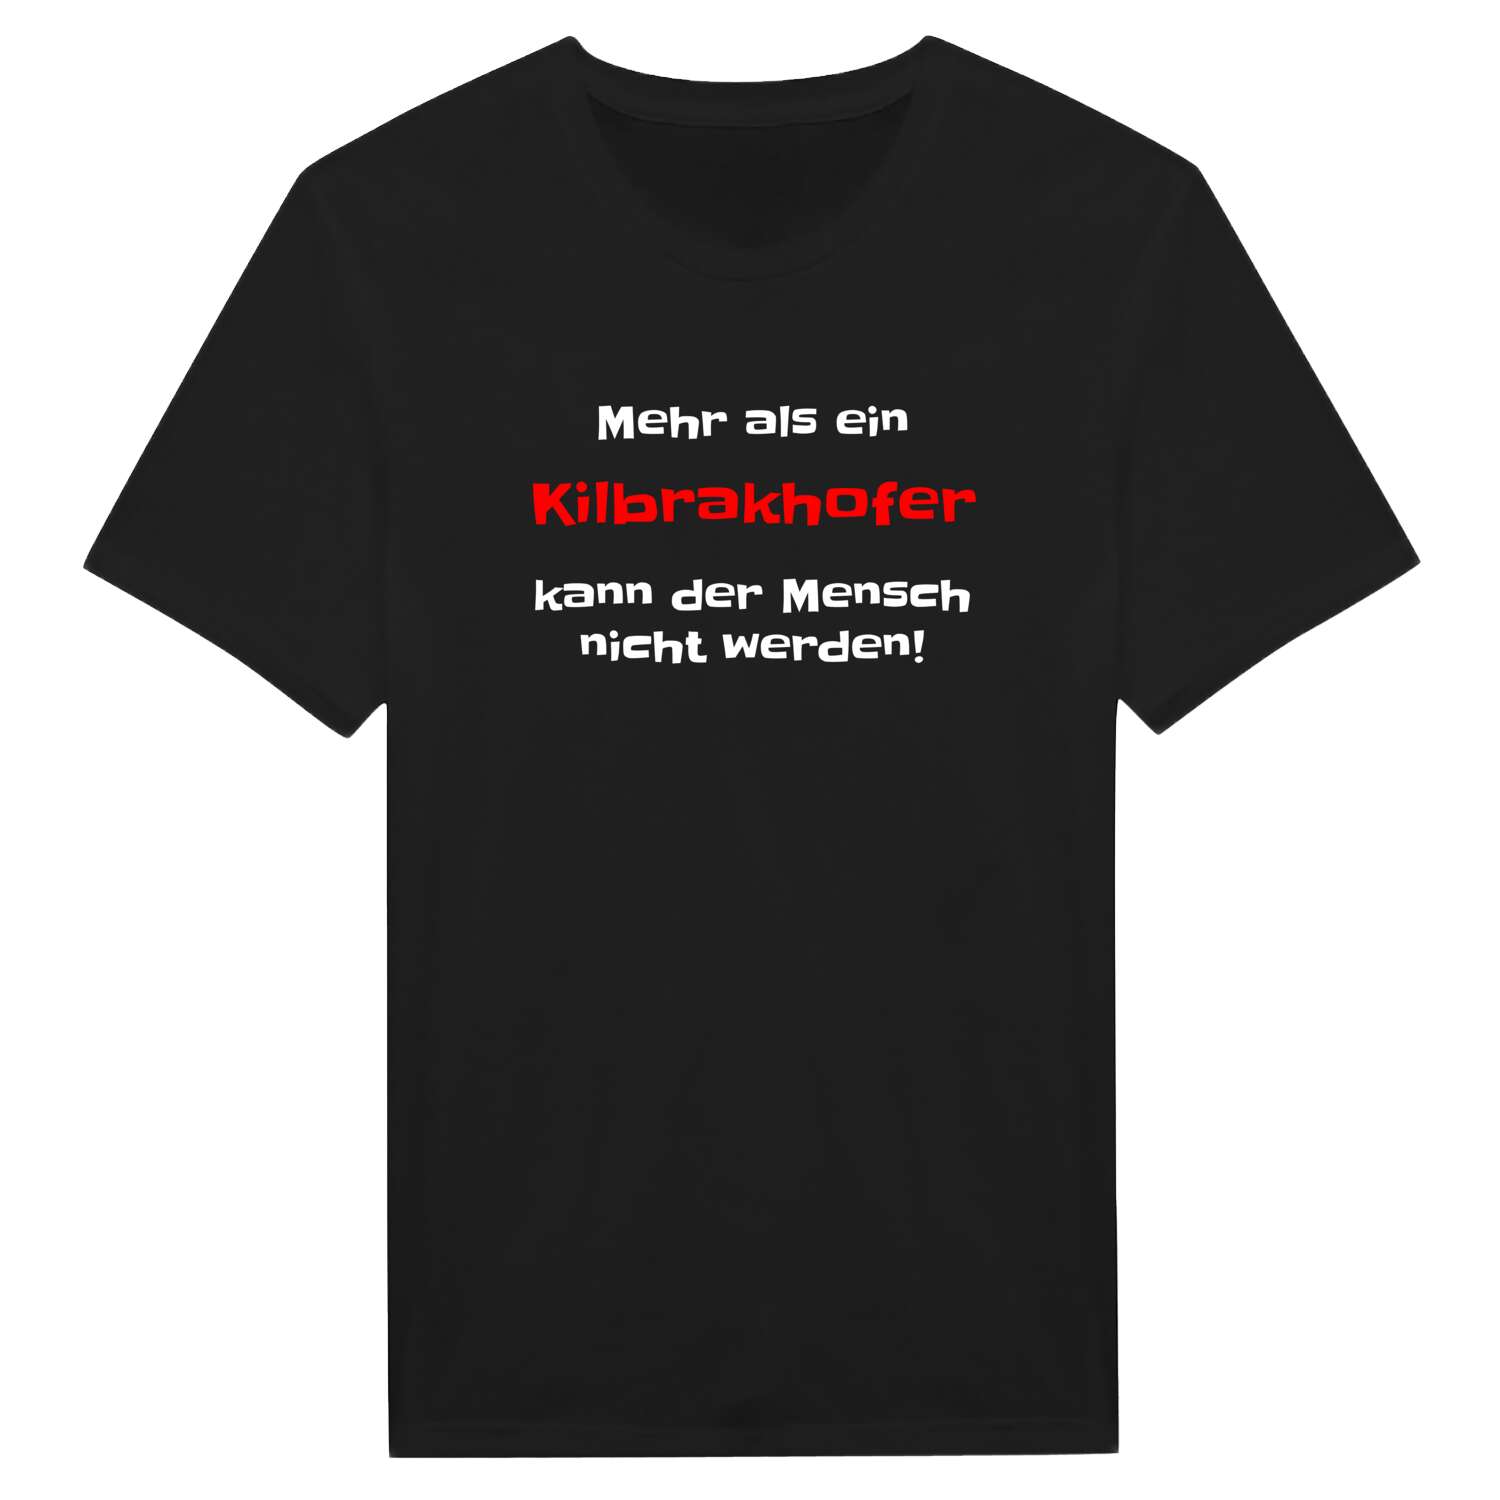 Kilbrakhof T-Shirt »Mehr als ein«